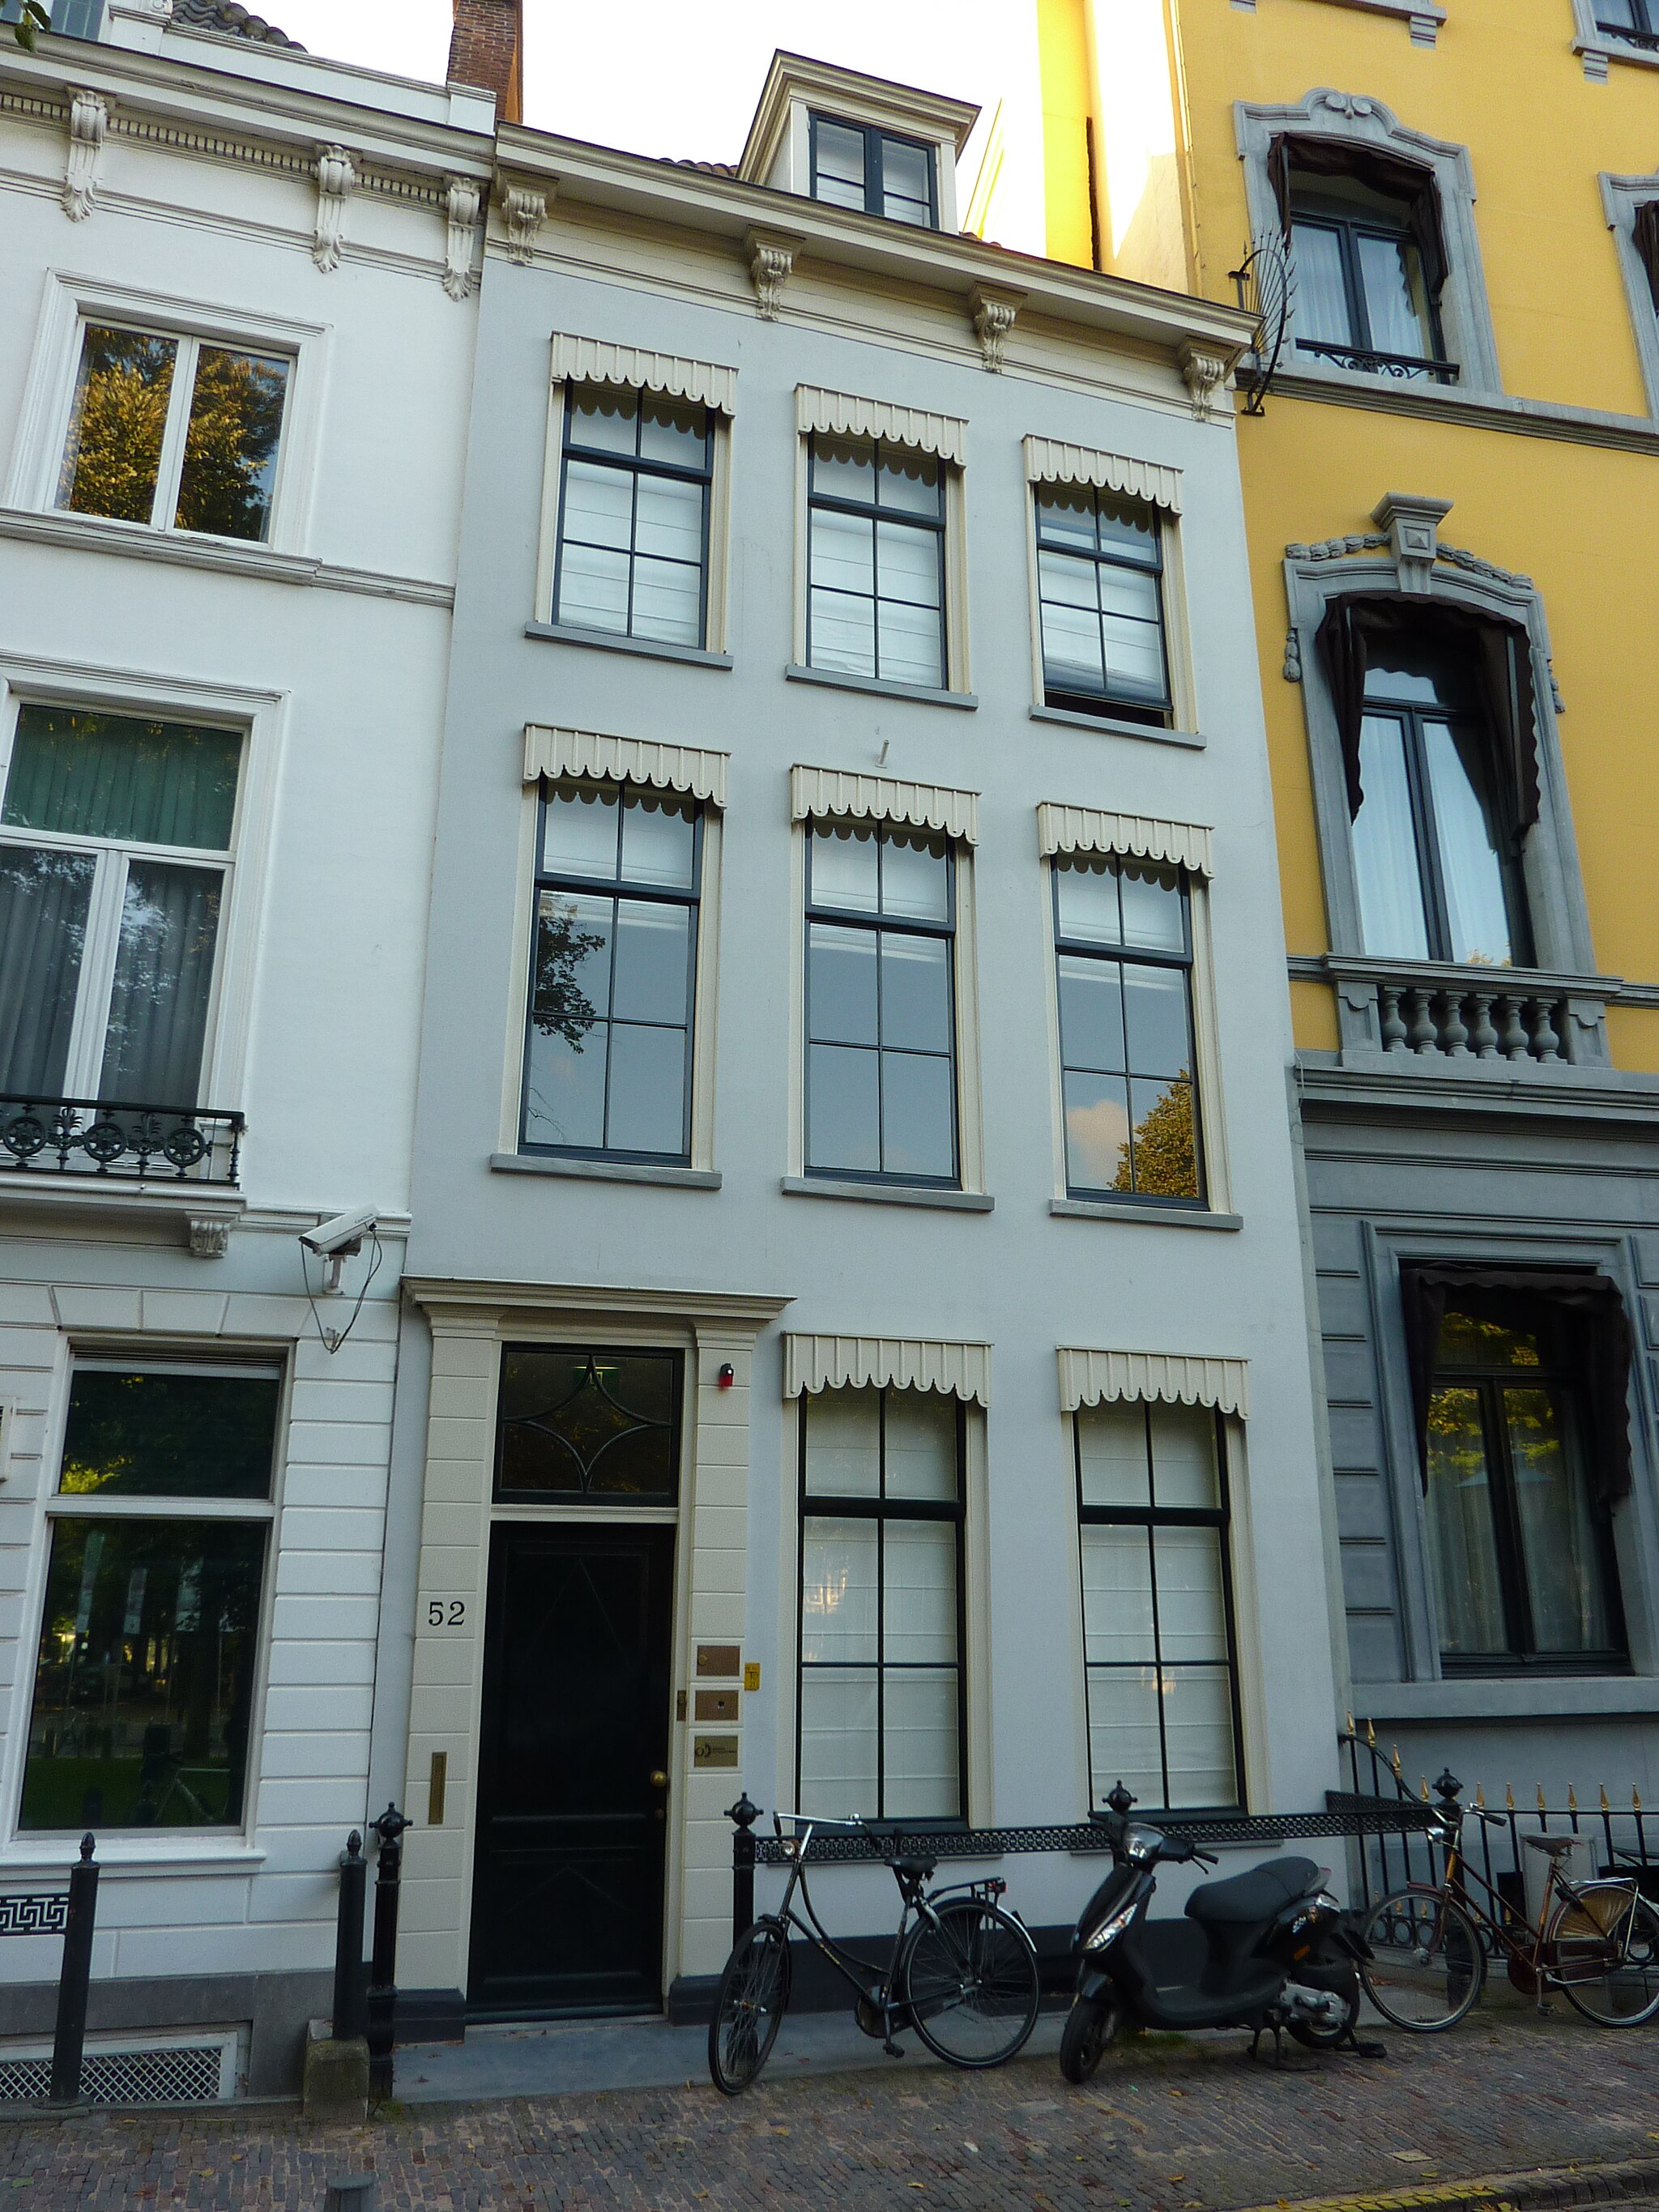 Het vroegere hoofdkwartier van GS III aan het Lange Voorhout 52 in Den Haag. © Rudolphous via Wikipedia